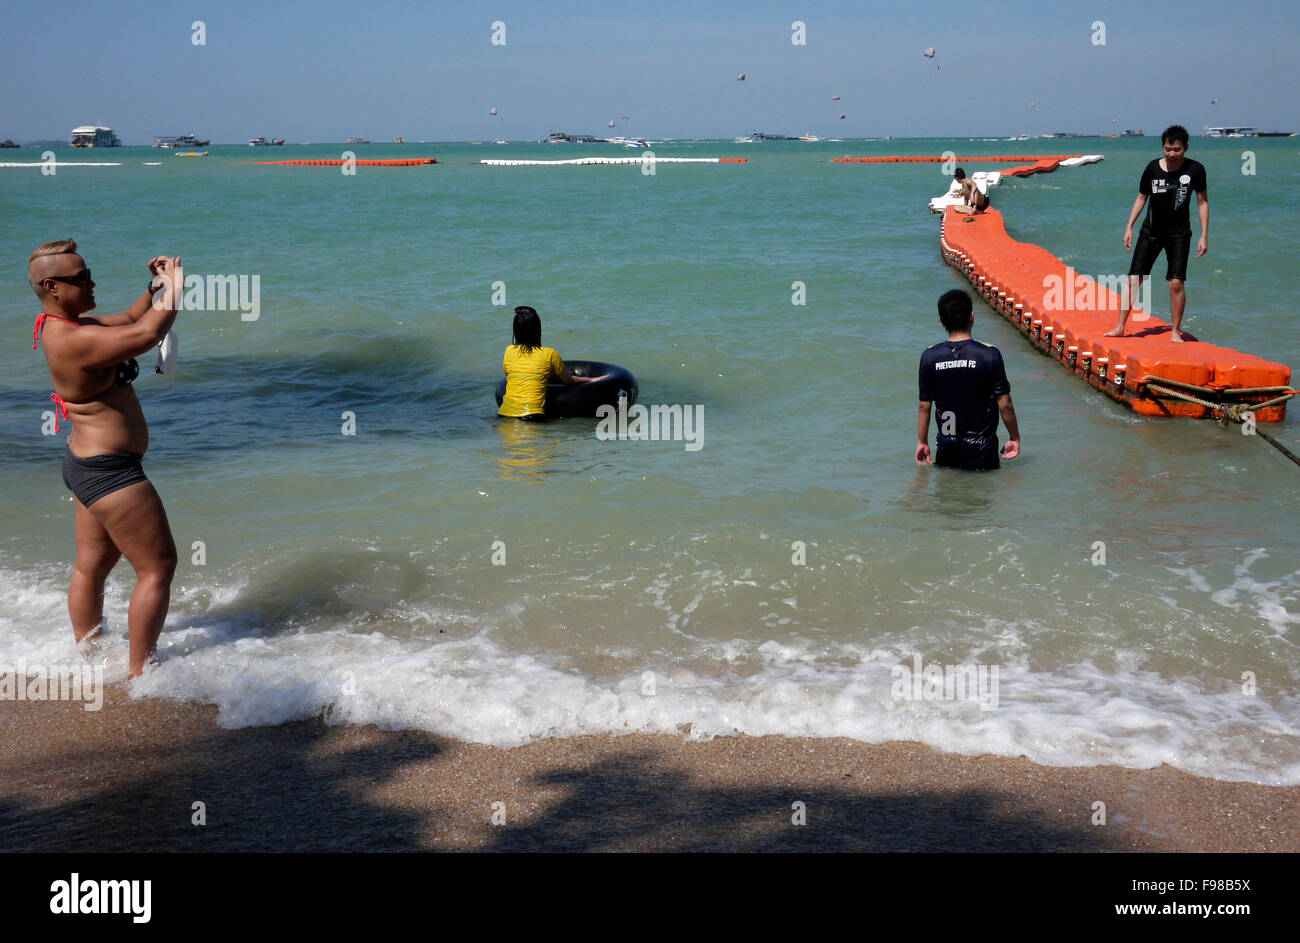 Una safe area nuoto è segnato da galleggianti collegati / boe sulla spiaggia di Pattaya Thailandia per proteggere i bagnanti dal jet skis etc Foto Stock